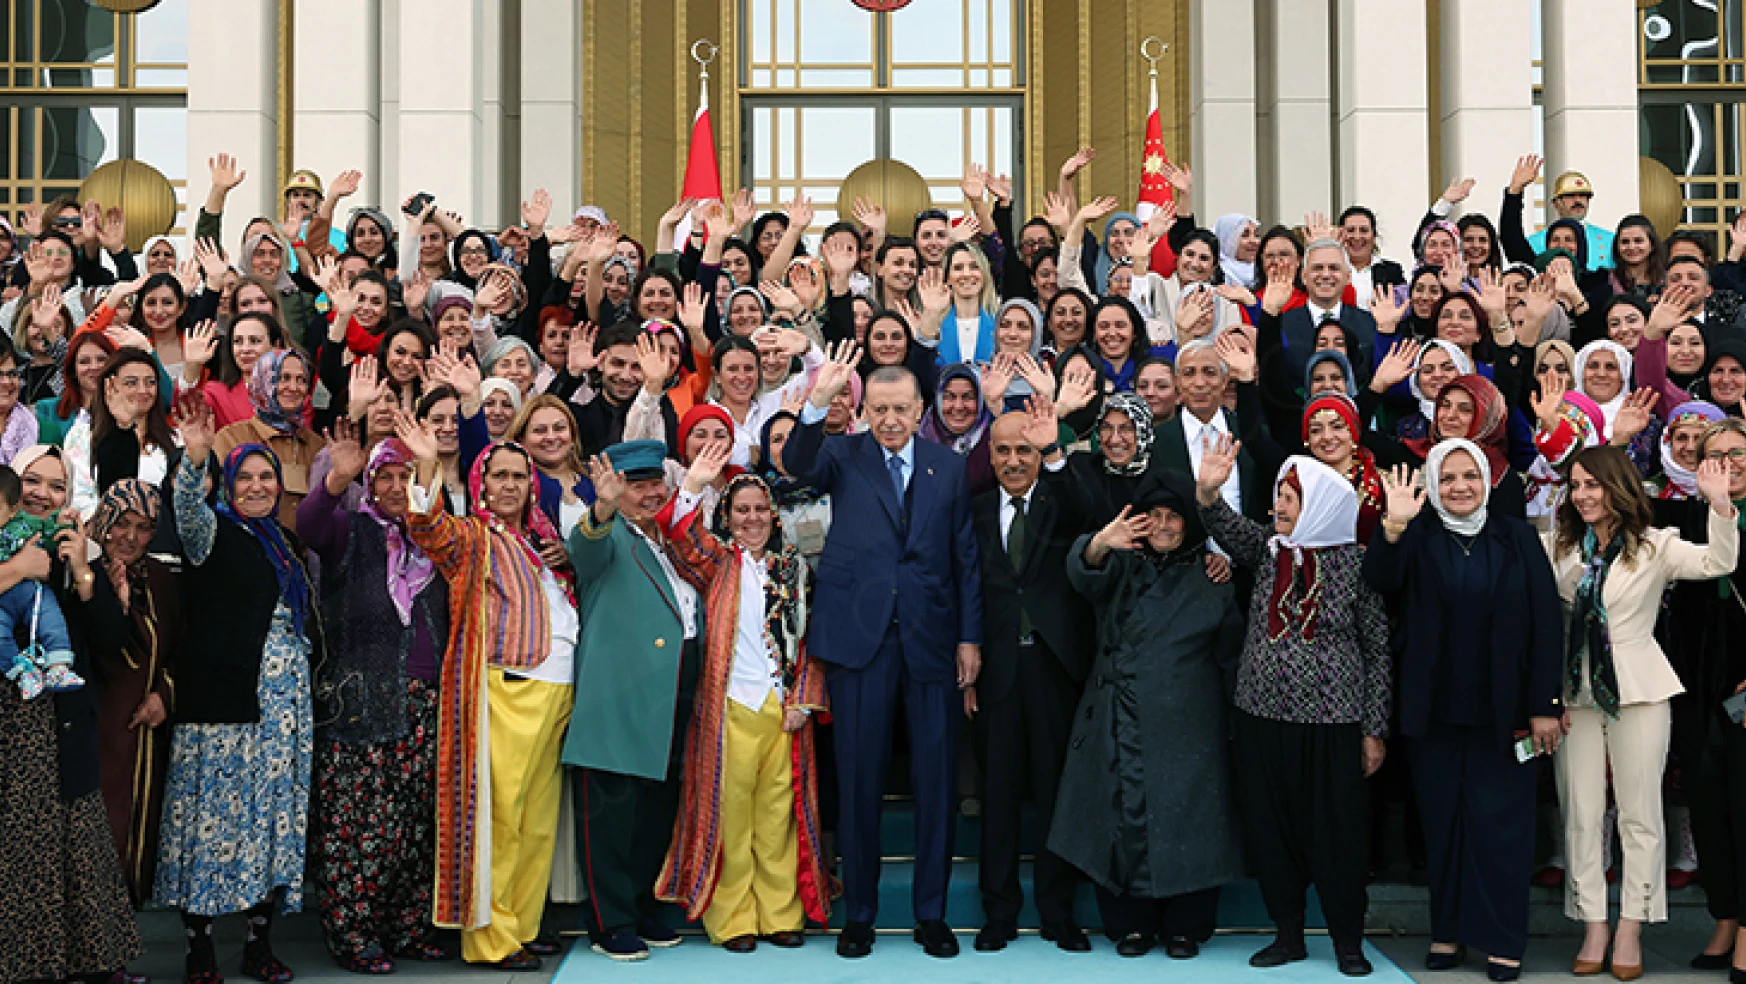 Toprağa iz bırakan kadınlar programına Cumhurbaşkanı Erdoğan sürprizi